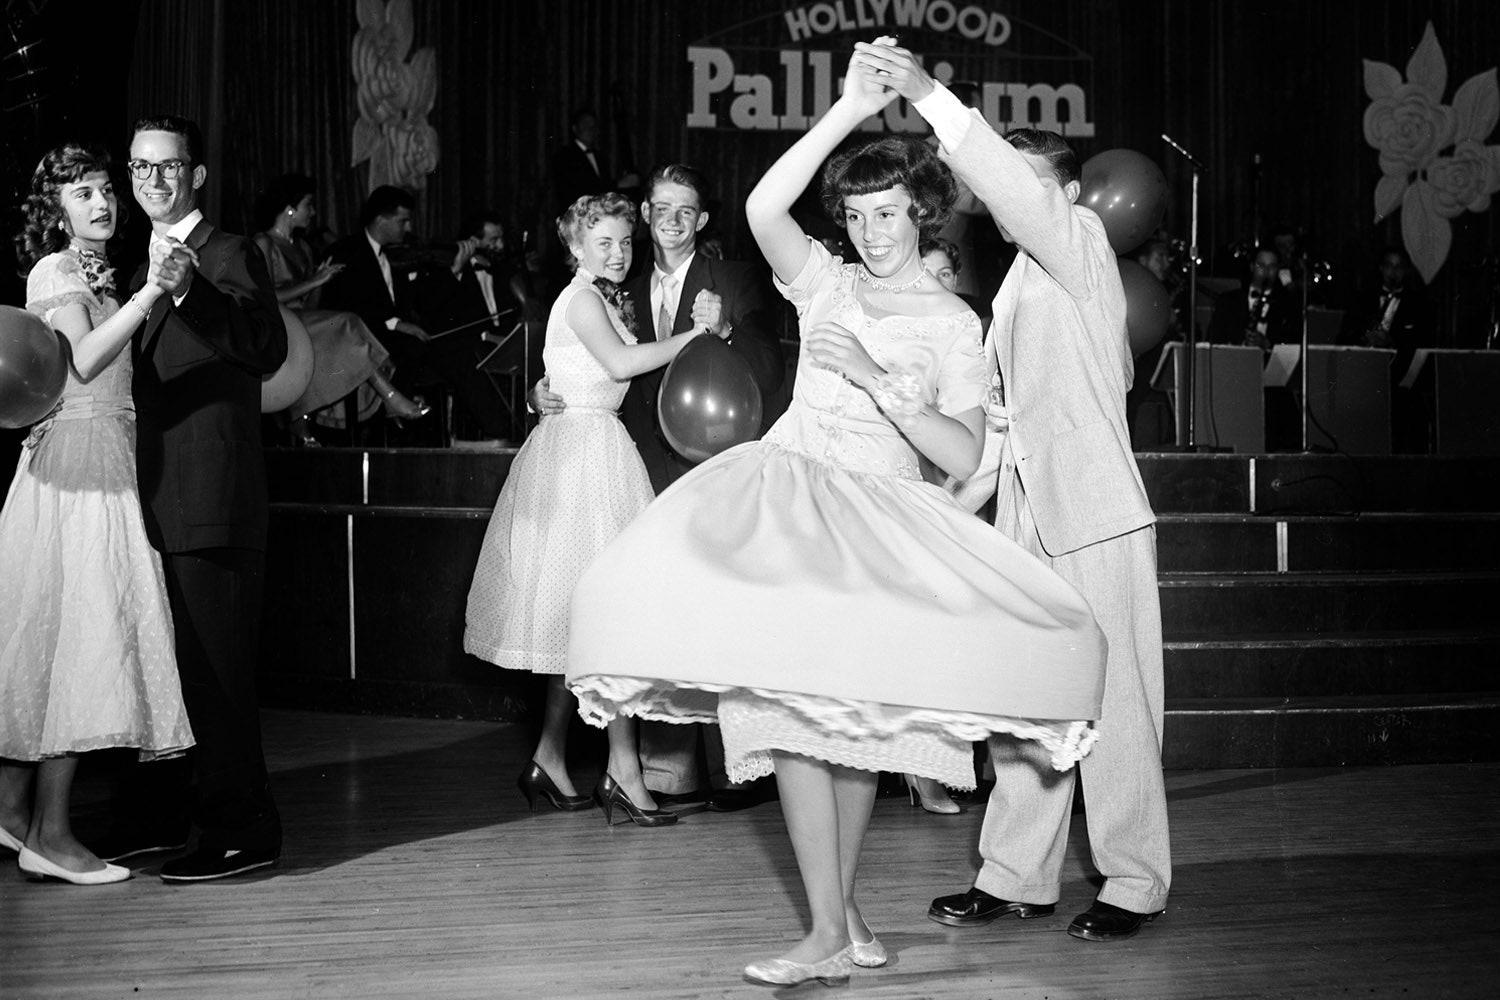 Старшеклассники на вечеринке в Hollywood Palladium 1954 год